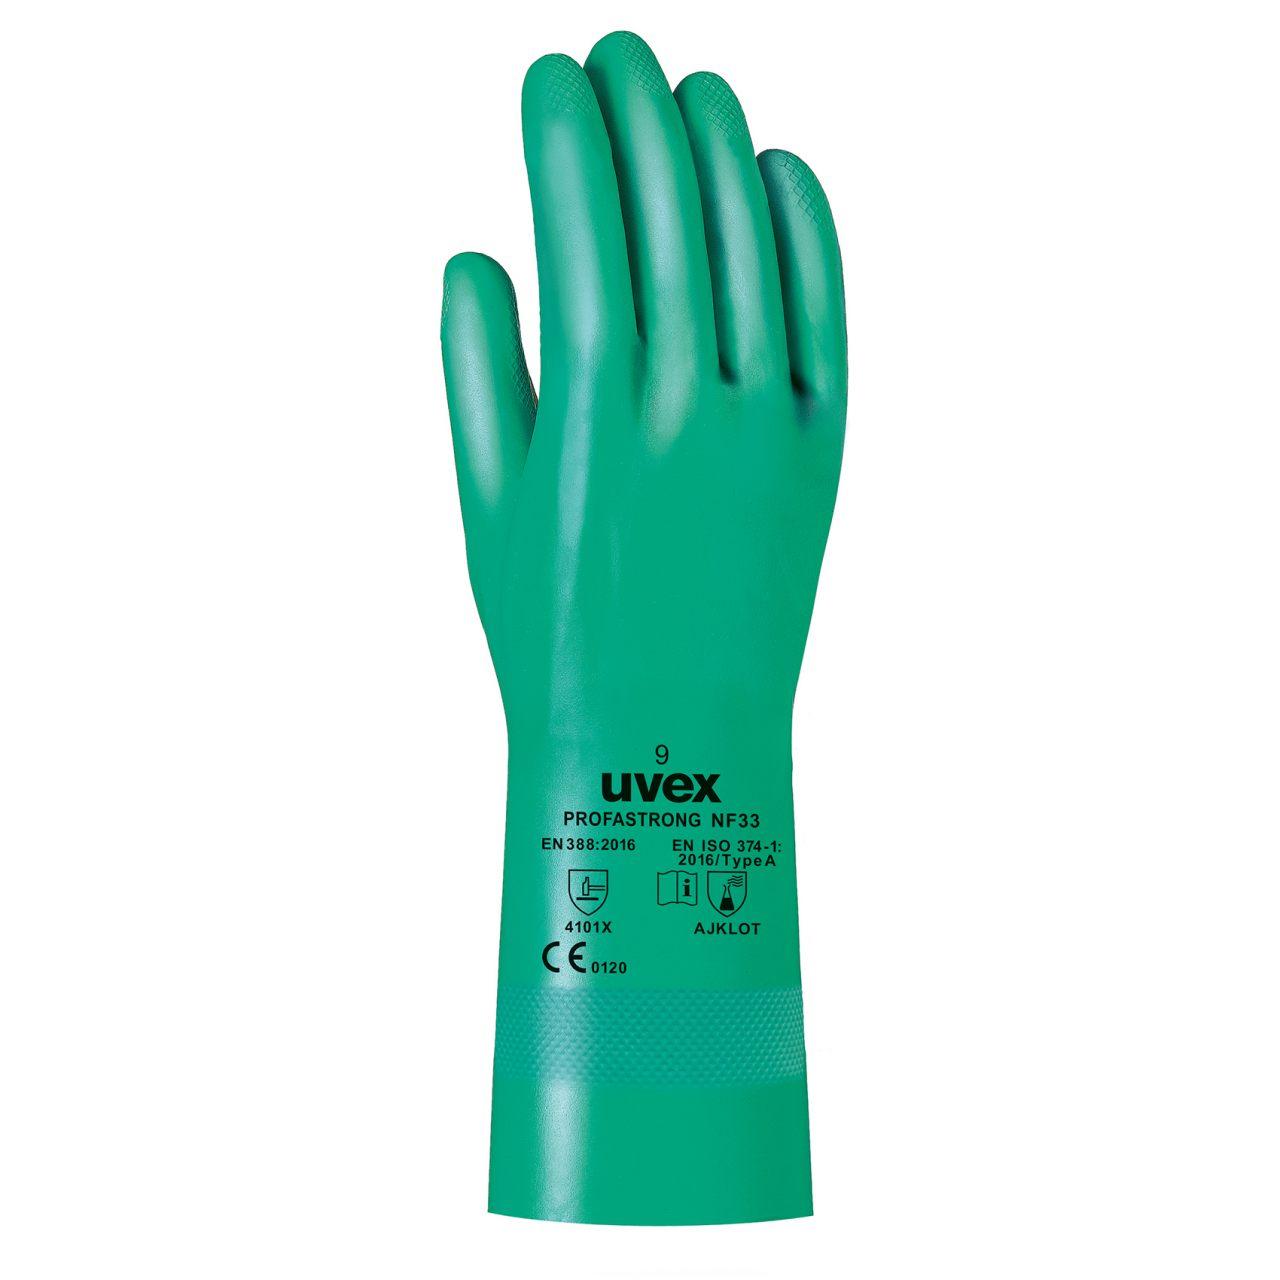 Защитные перчатки uvex профастронг NF33